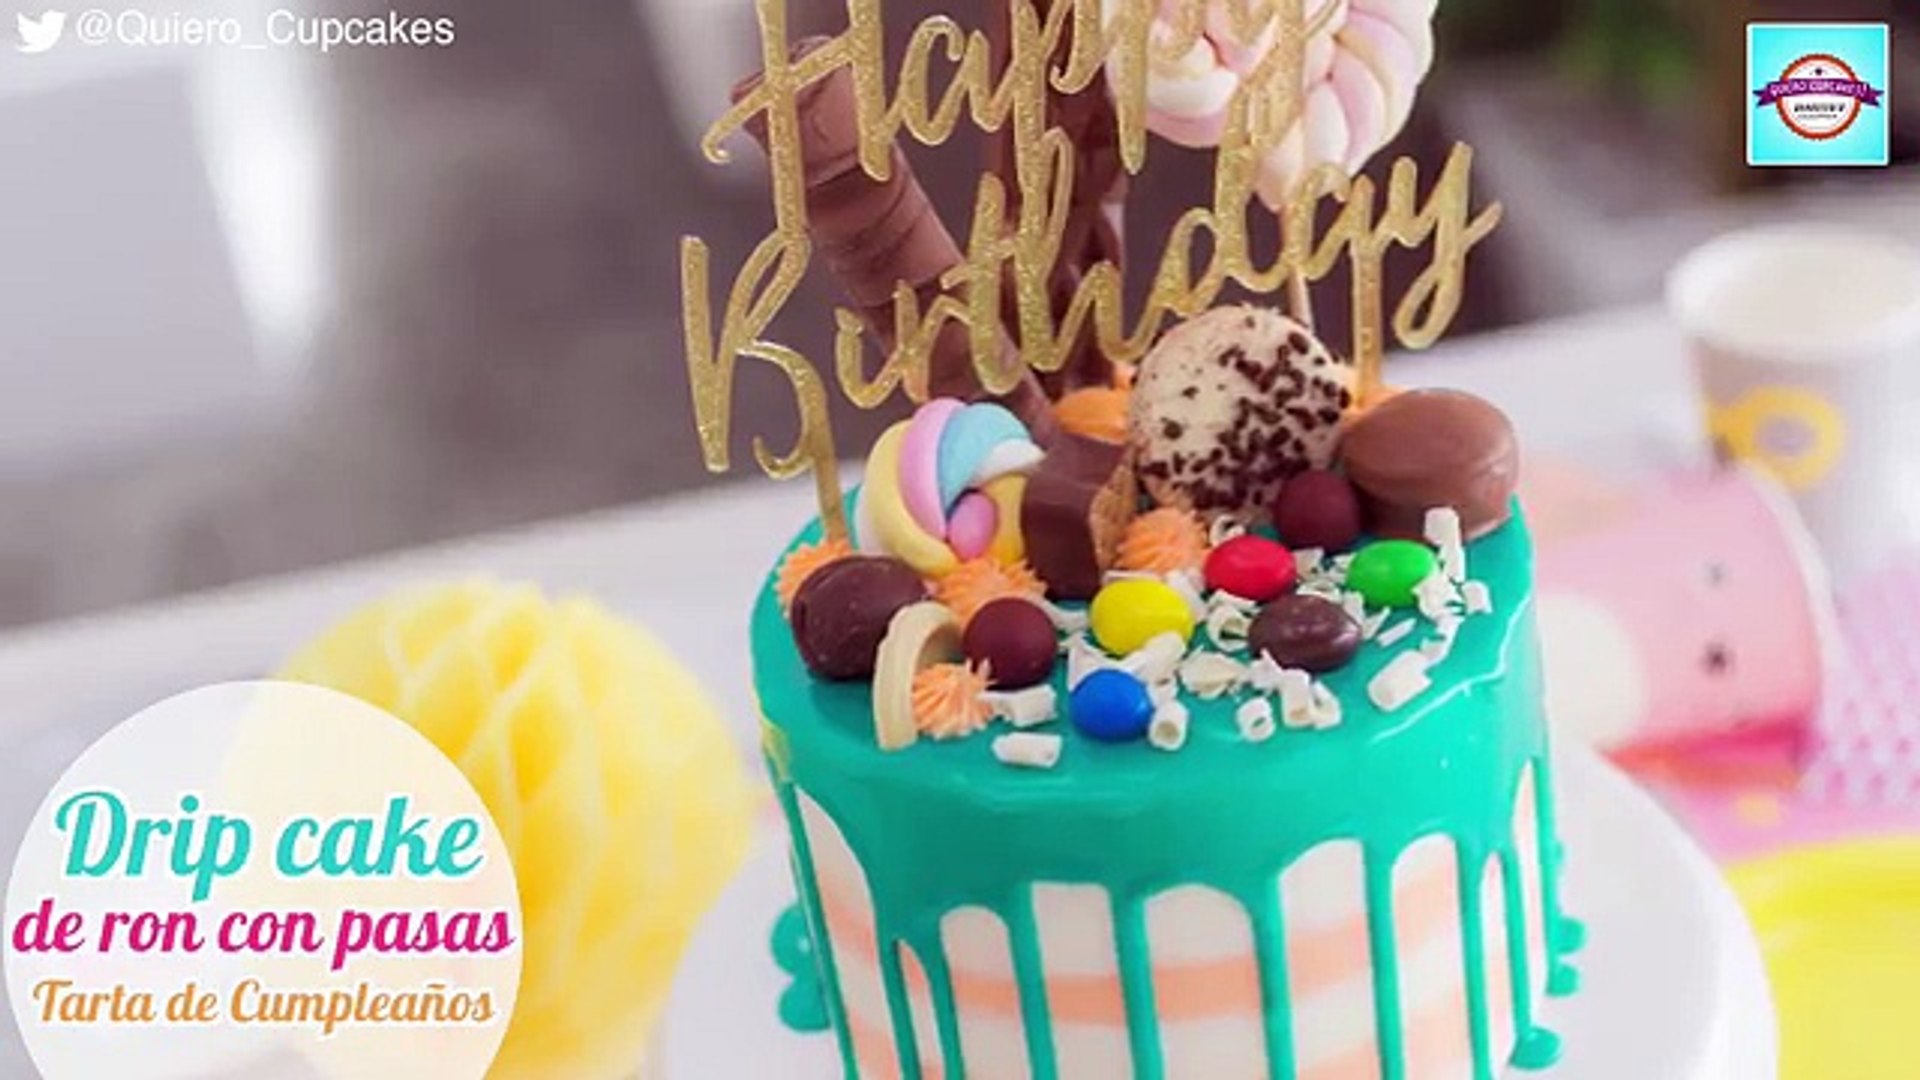 Tarta de cumpleaños de Ron con pasas | Drip Cake | Quiero Cupcakes! – Видео  Dailymotion